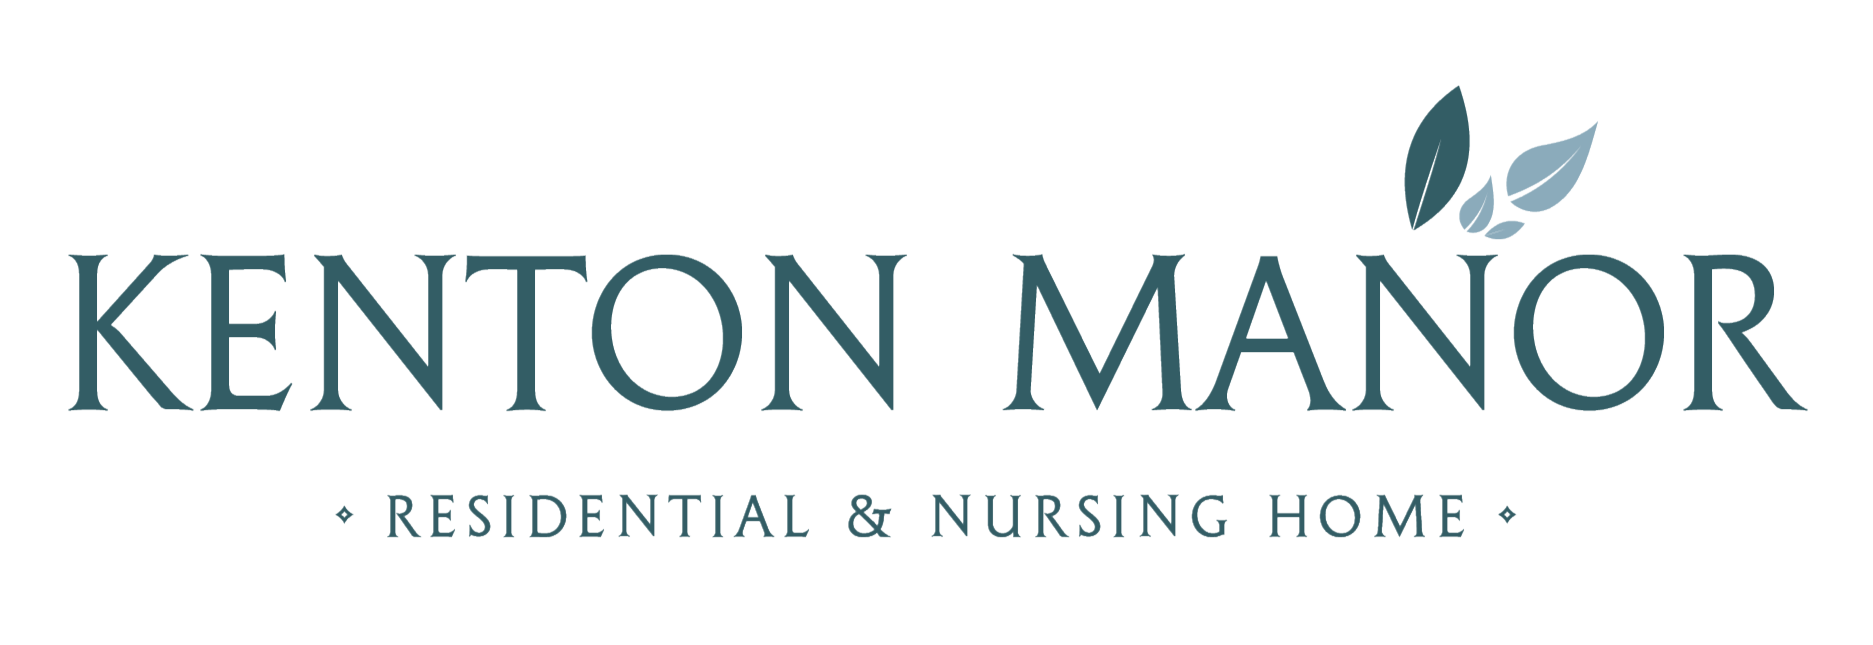 Kenton Manor Care Home logo